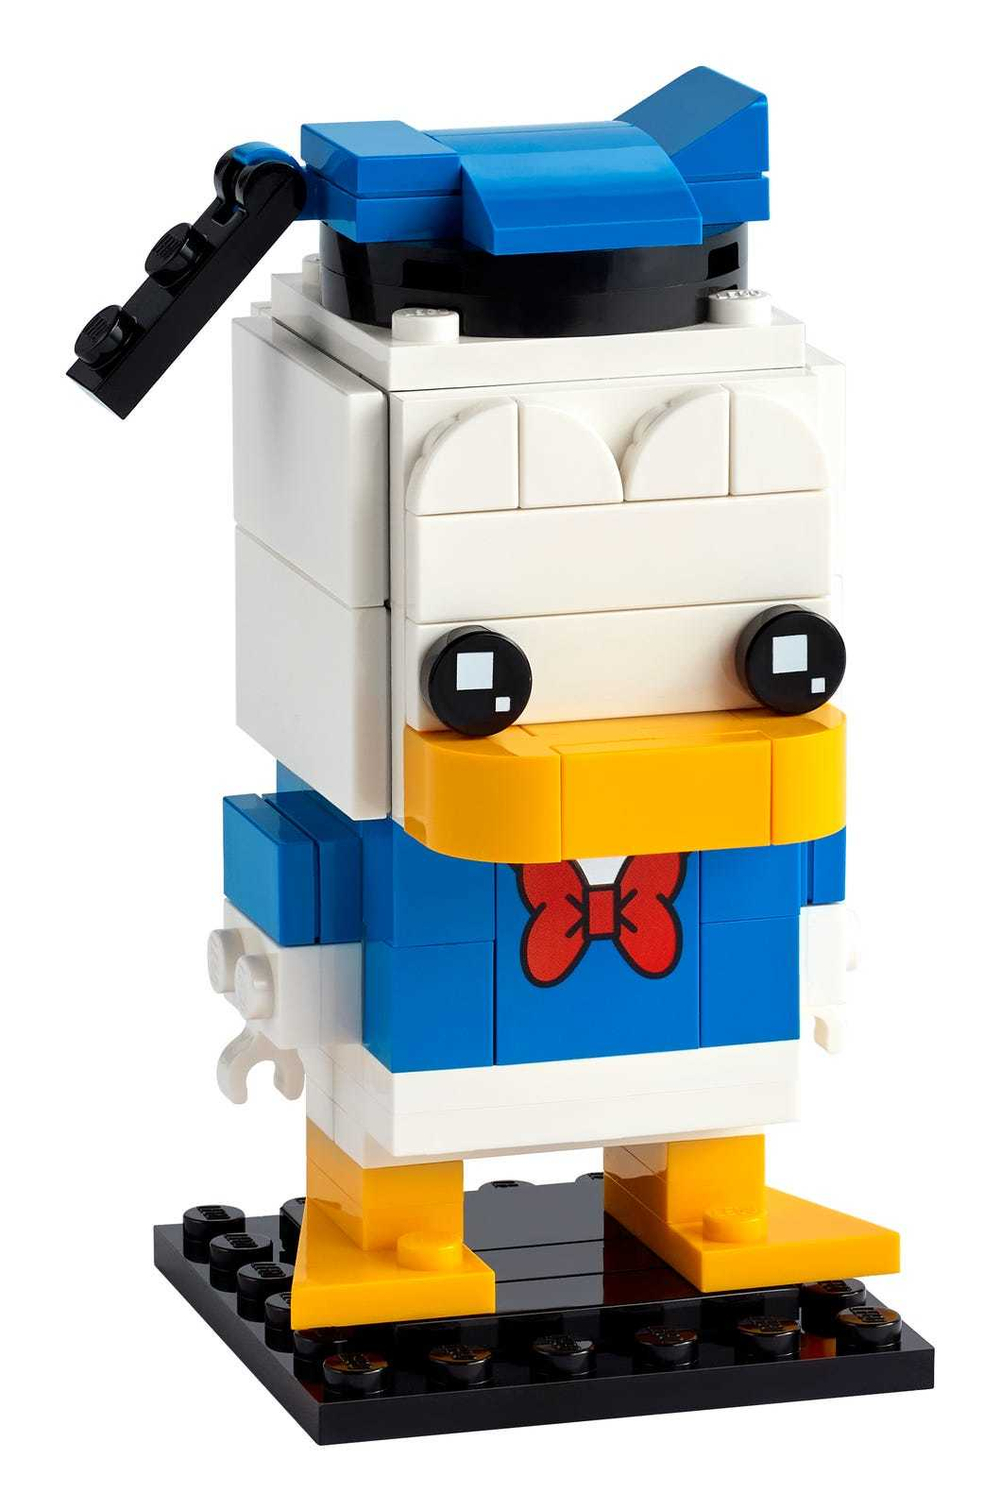 Конструктор LEGO BrickHeadz Сувенирный набор Дональд Дак | 40377